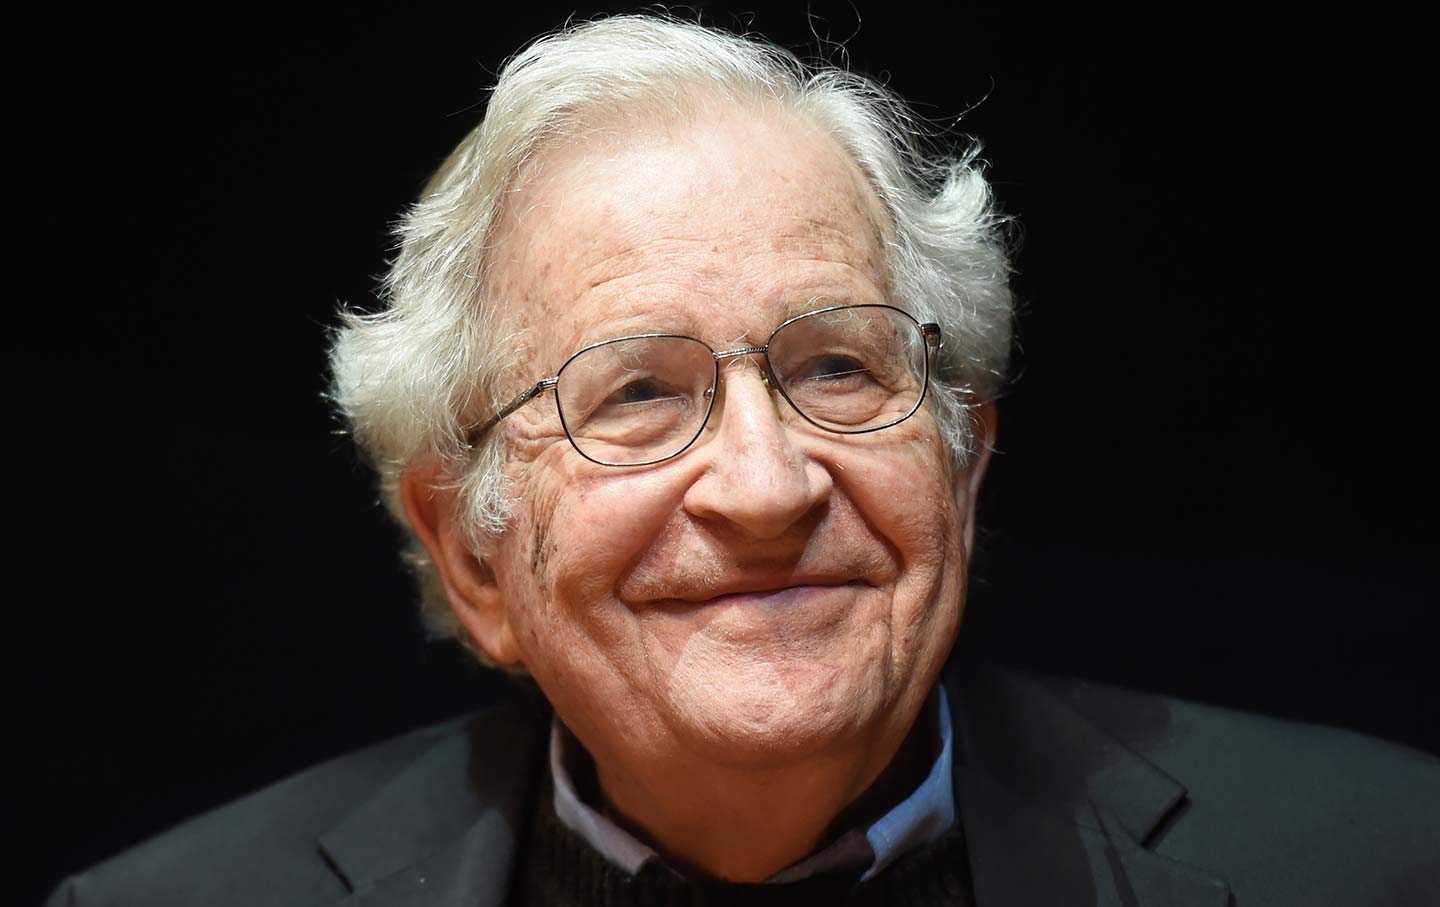 Slavni ljevičarski intelektualac Noam Chomsky, otac moderne lingvistike, kako ga nazivaju, za New York Times napisao je članak o ChatGPT-u